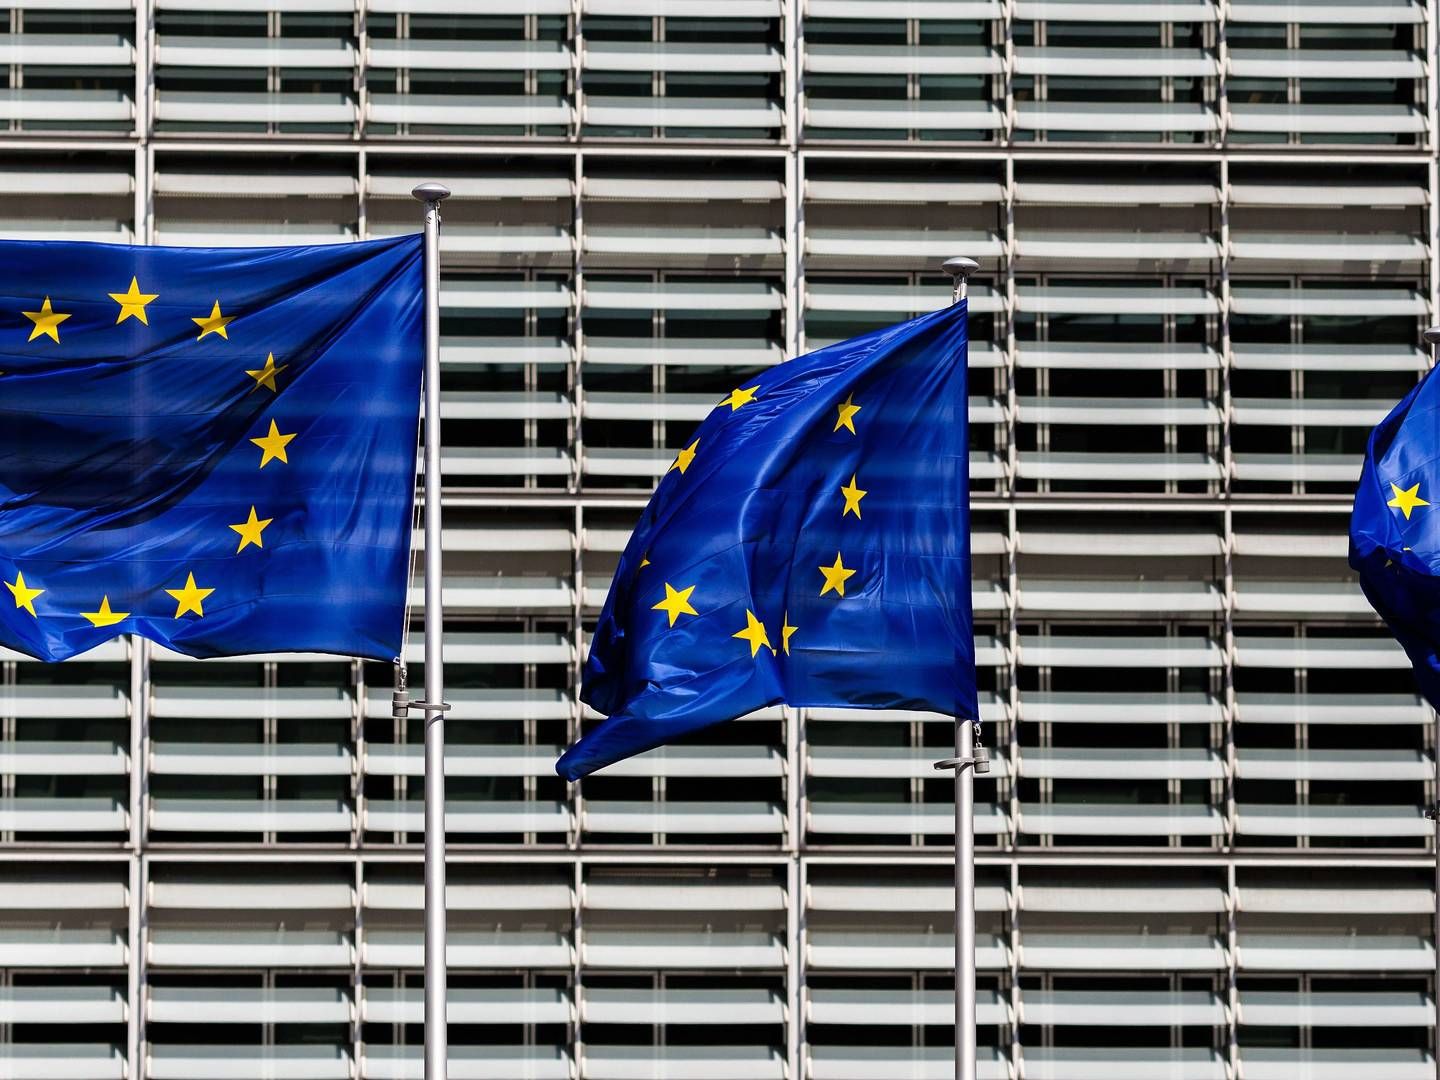 Fahnen vor dem Gebäude der Europäischen Kommission in Brüssel. | Foto: picture alliance / pressefoto_korb | Micha Korb